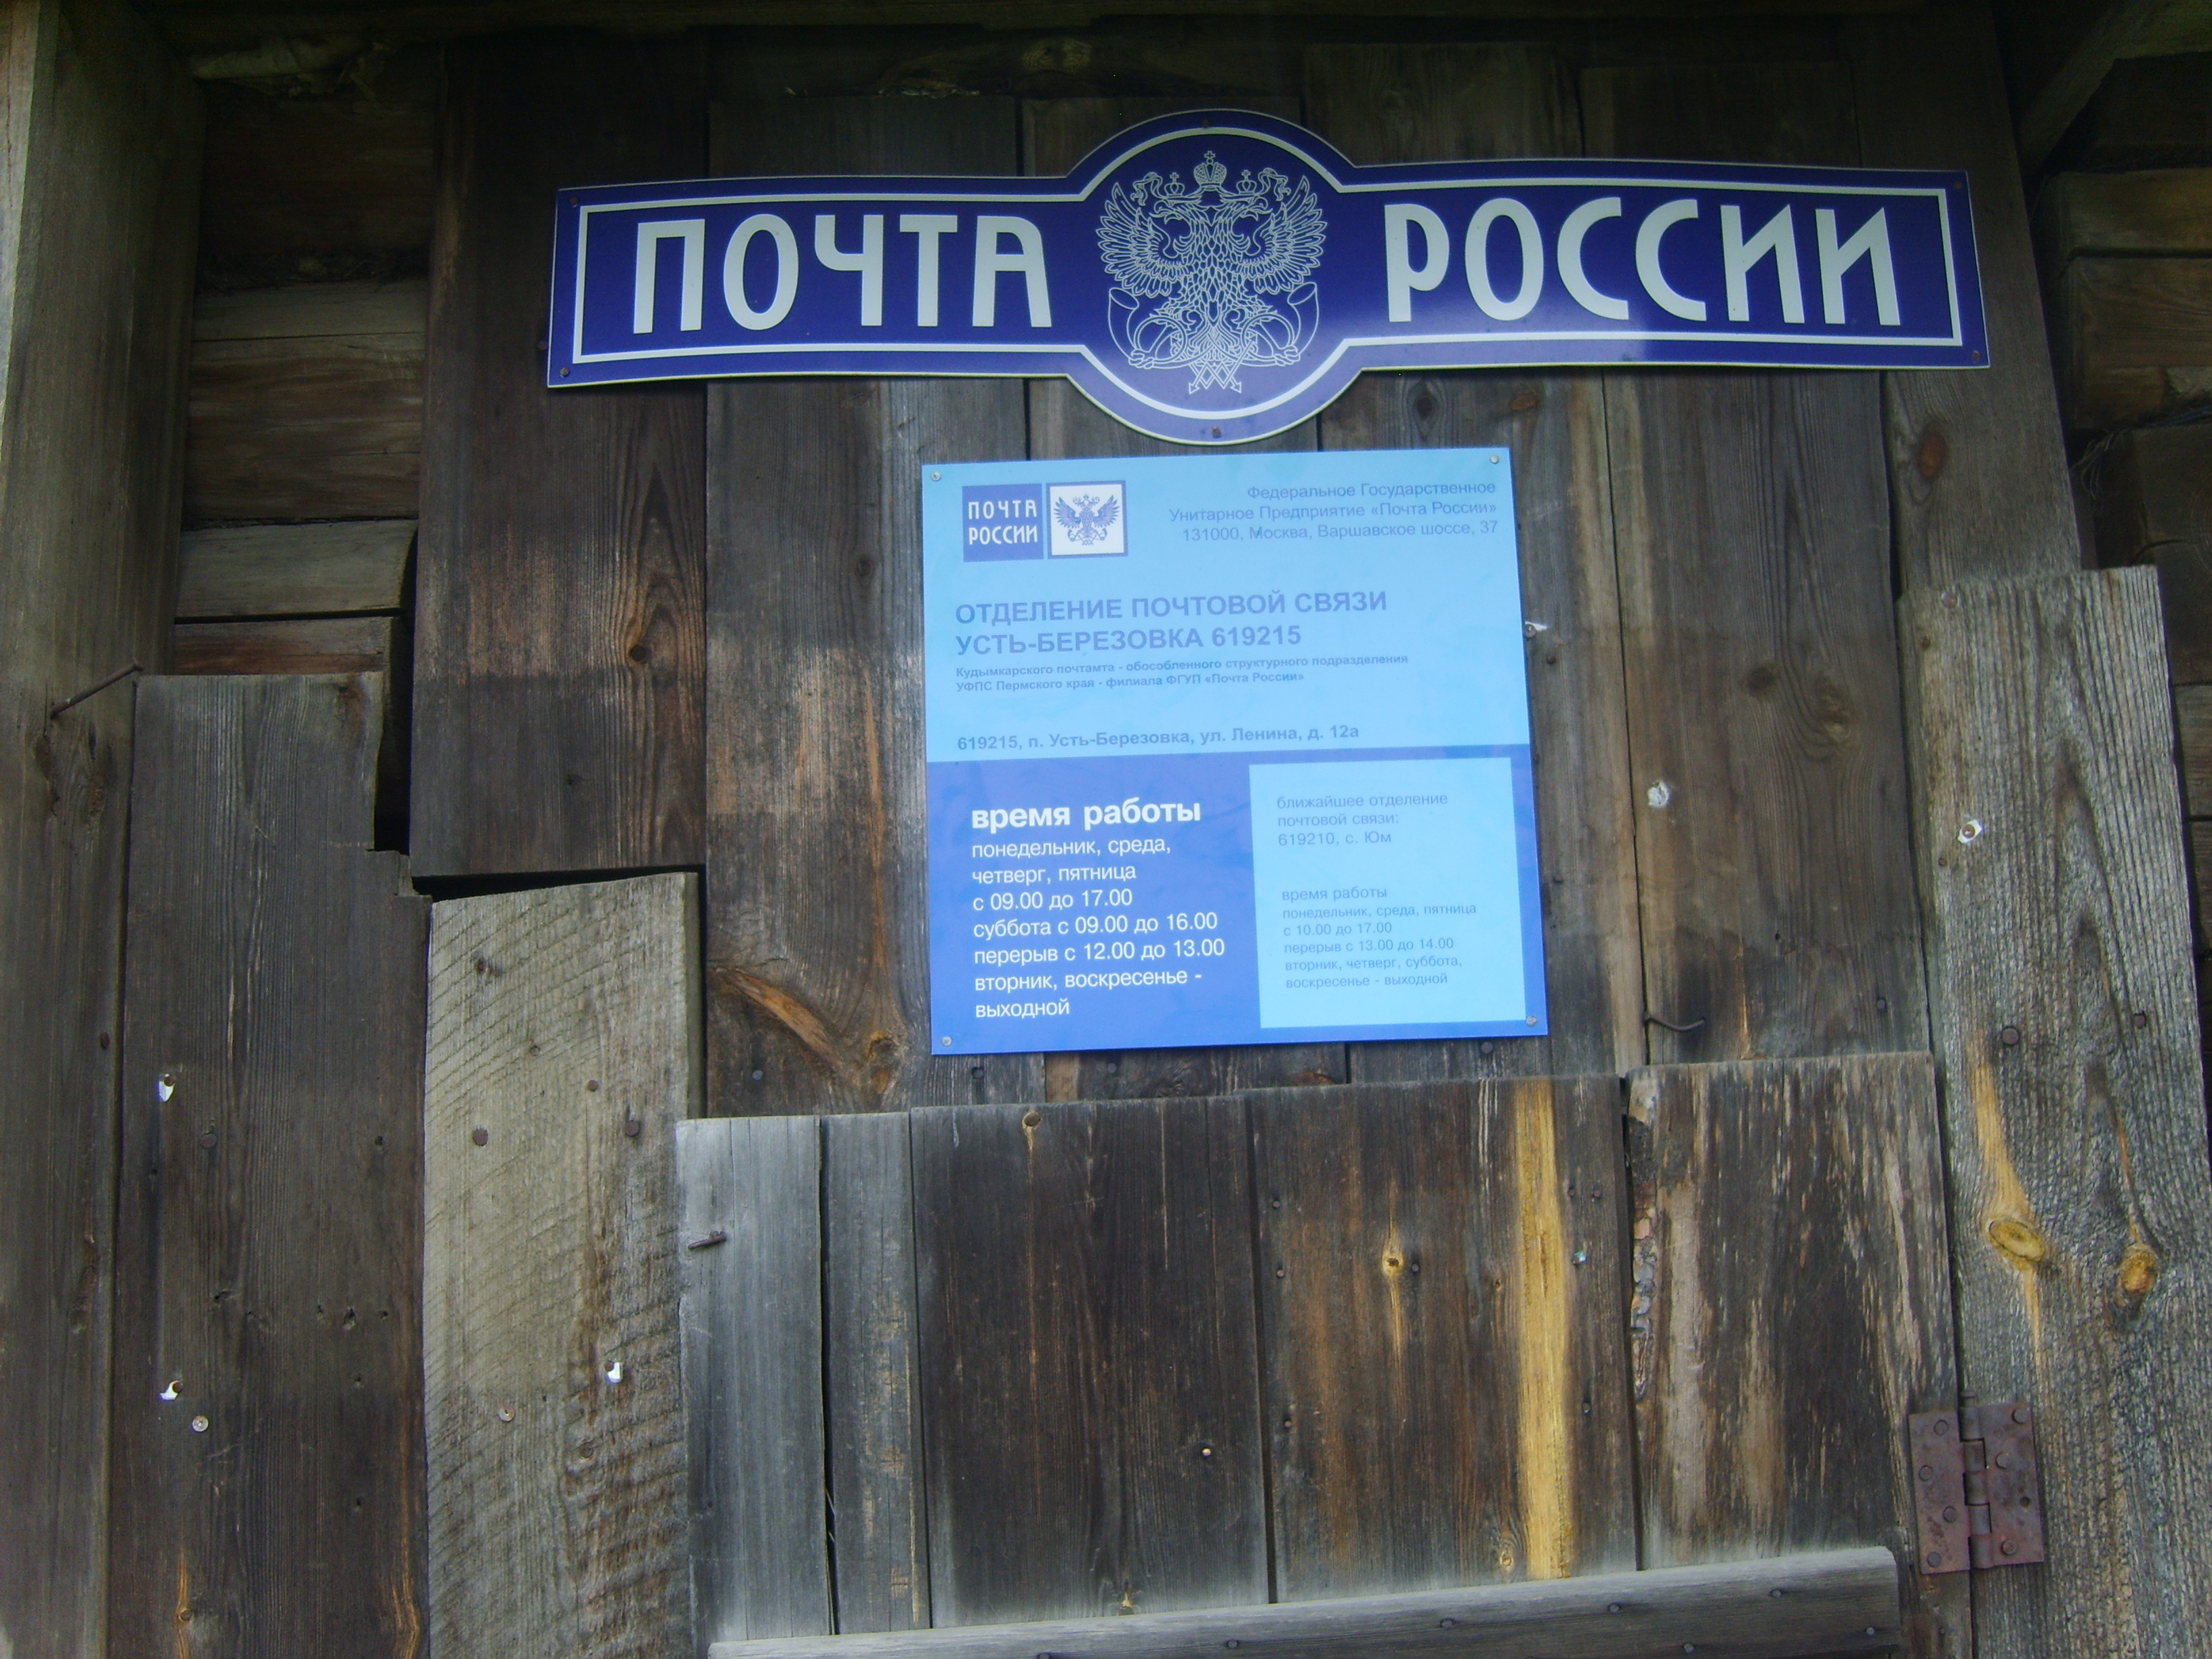 ВХОД, отделение почтовой связи 619215, Пермский край, Коми-Пермяцкий окр.